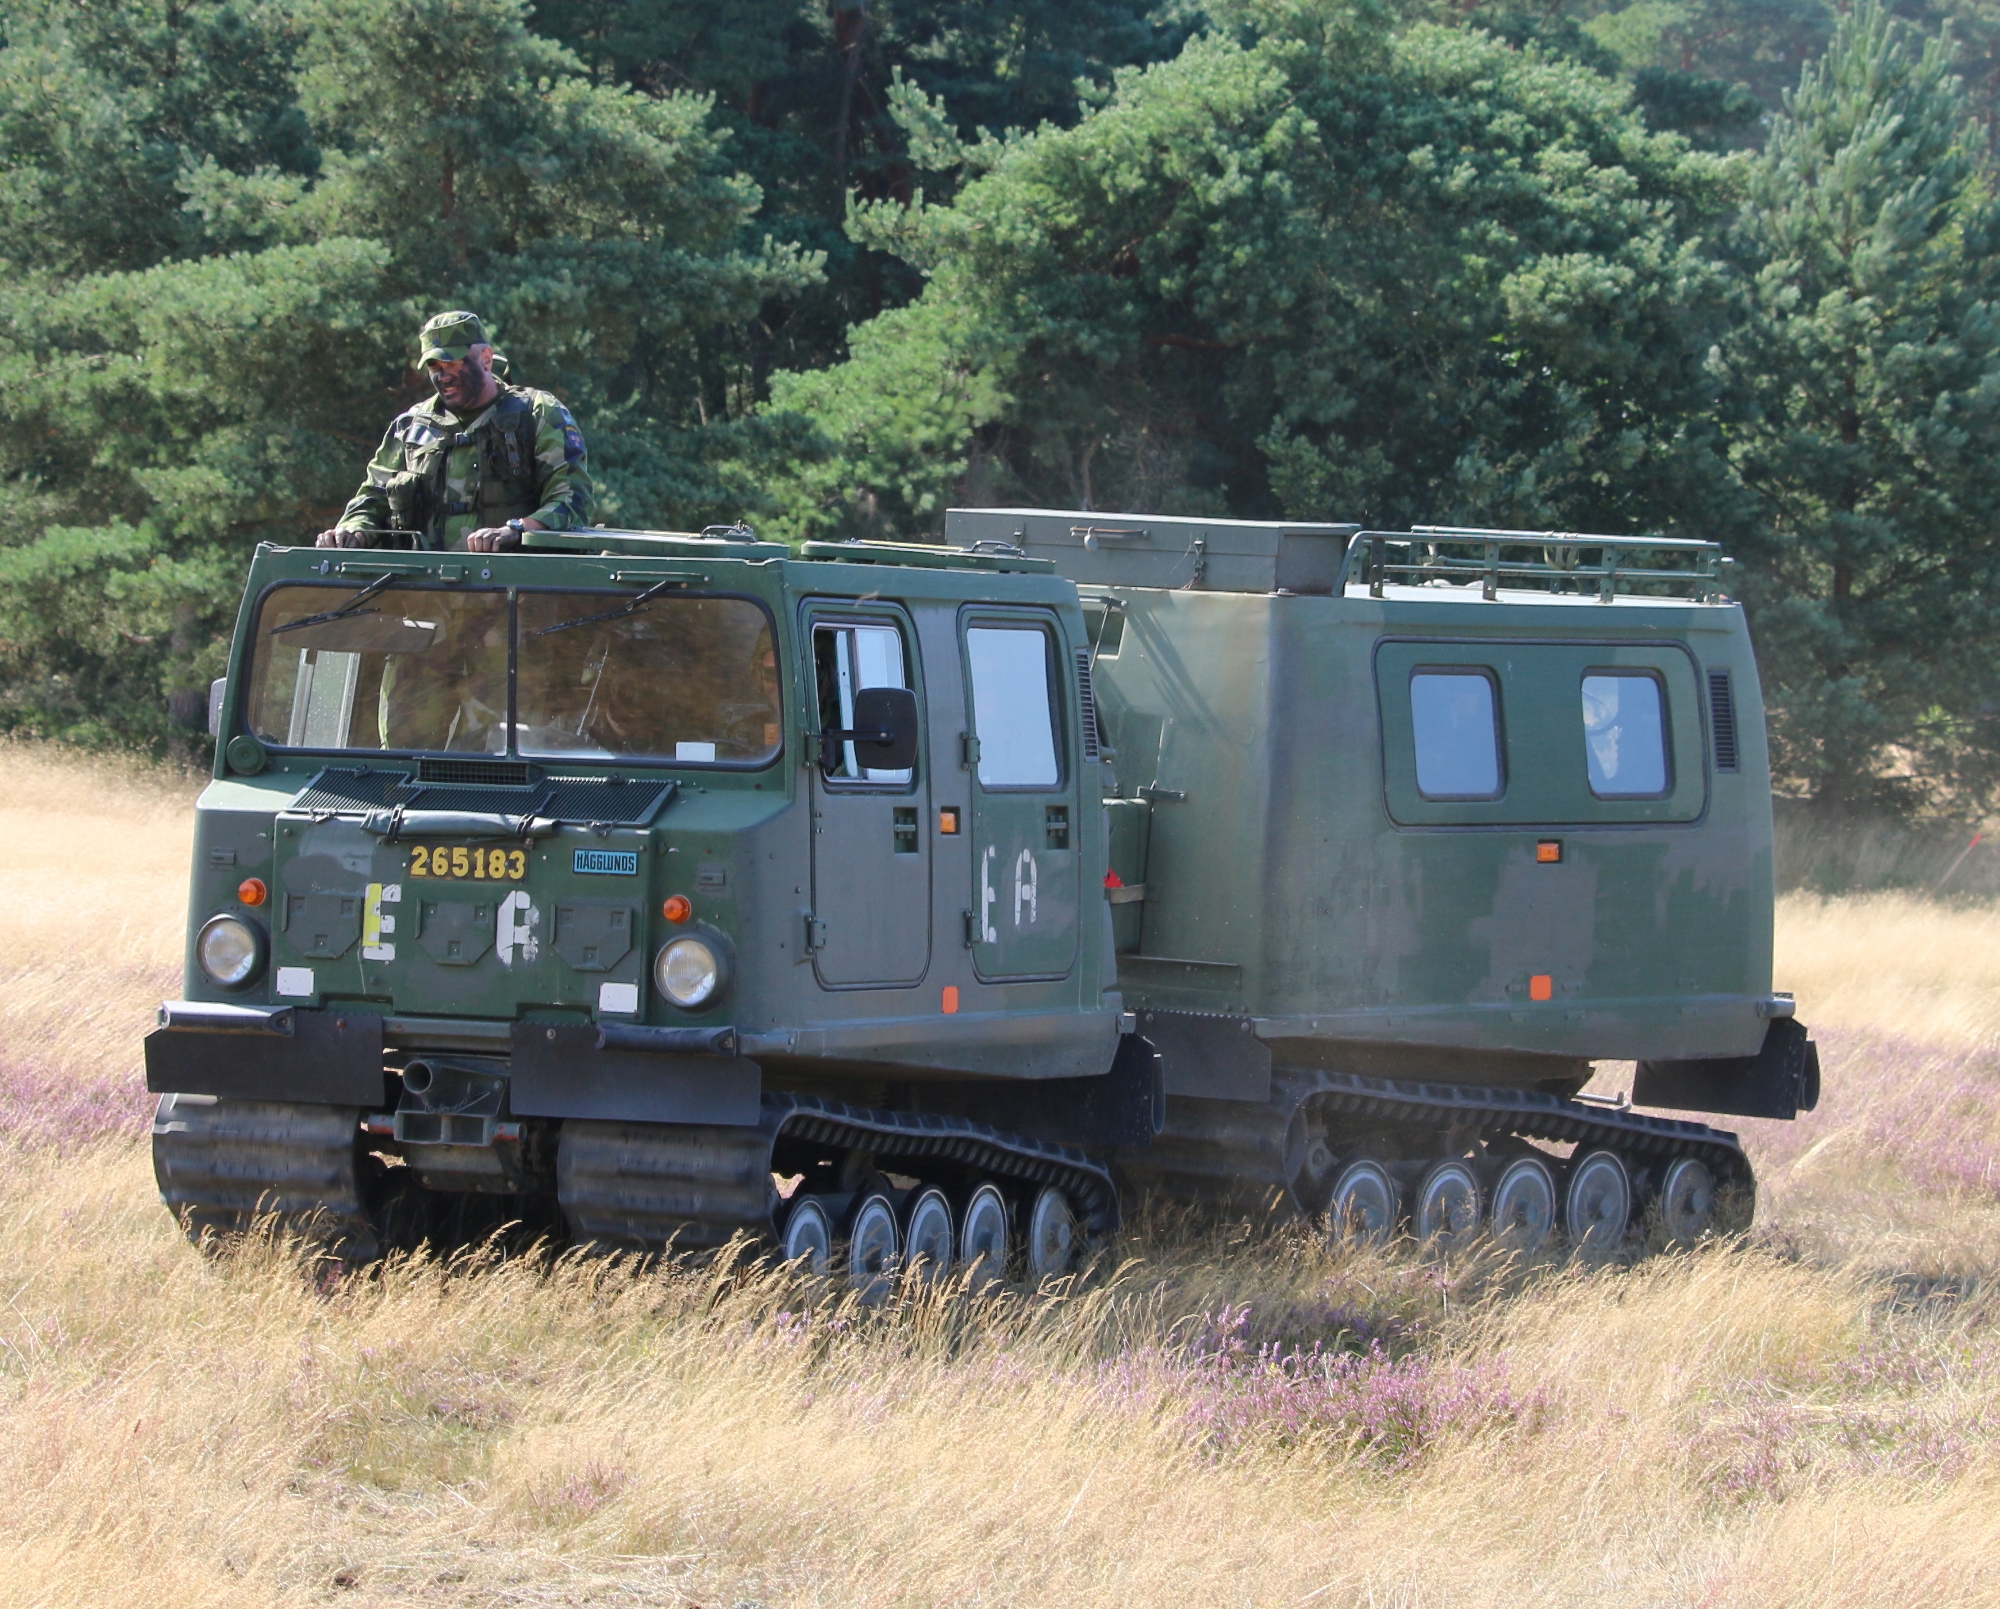 Leopard-radioapparater, Bandvagn 206 pansrade terrängfordon och WISINT 1 minröjningsfordon: Tyskland ger Ukraina ett nytt vapenpaket